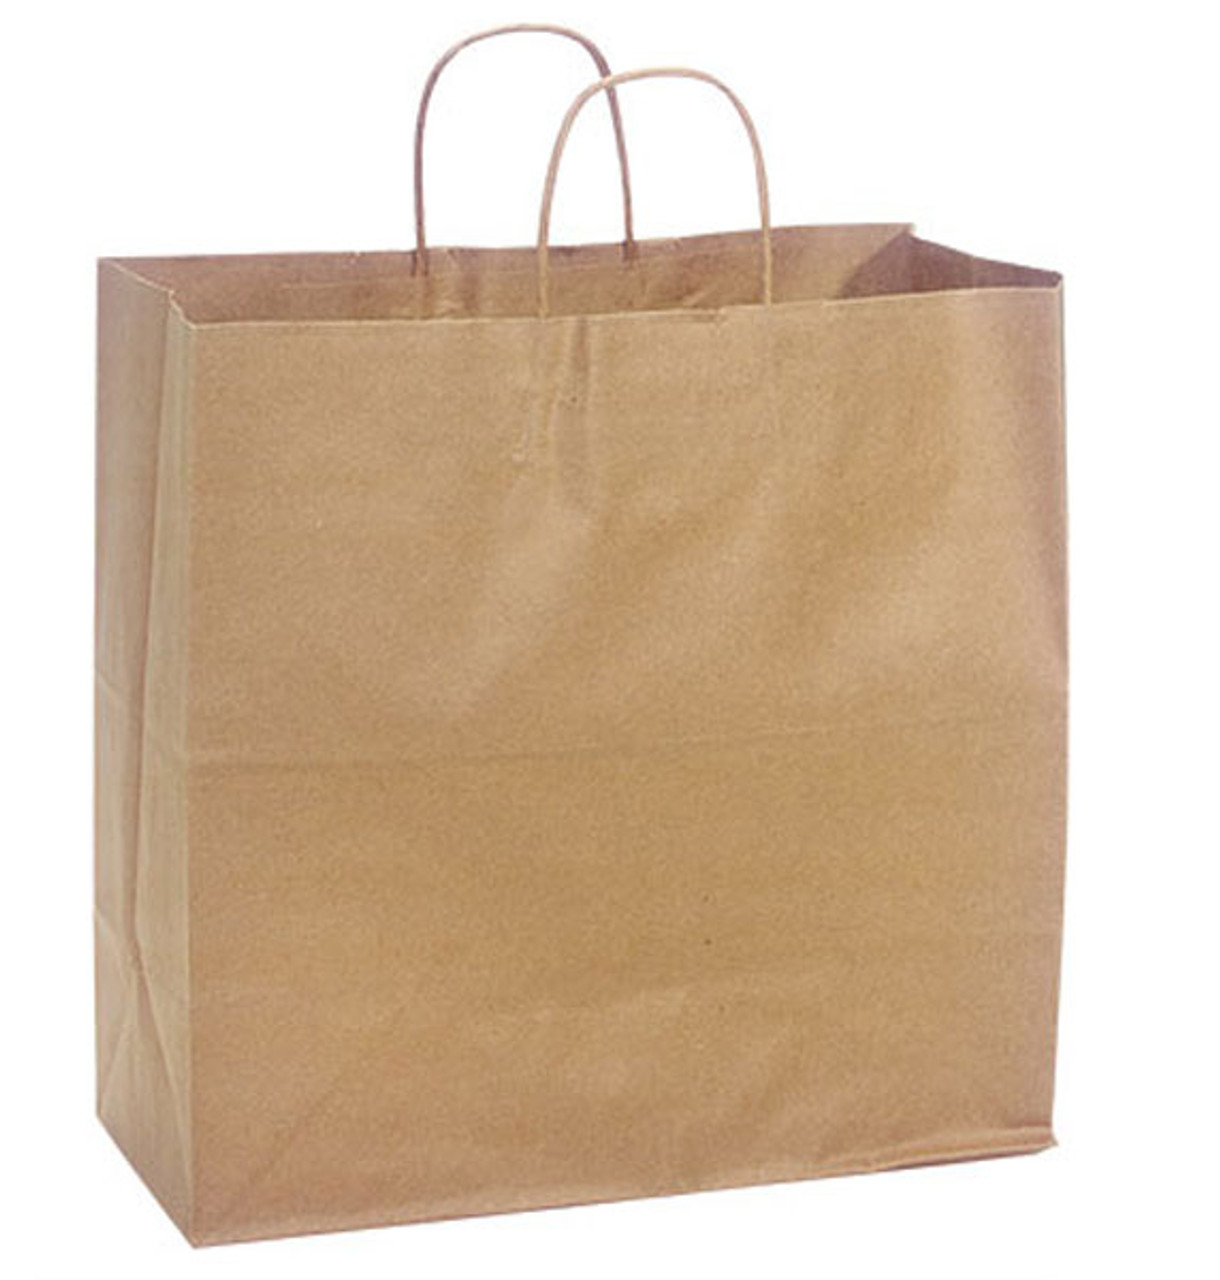 Jr Mart 13"x7"x13" 100% Recycled Kraft Paper Shopping Bags